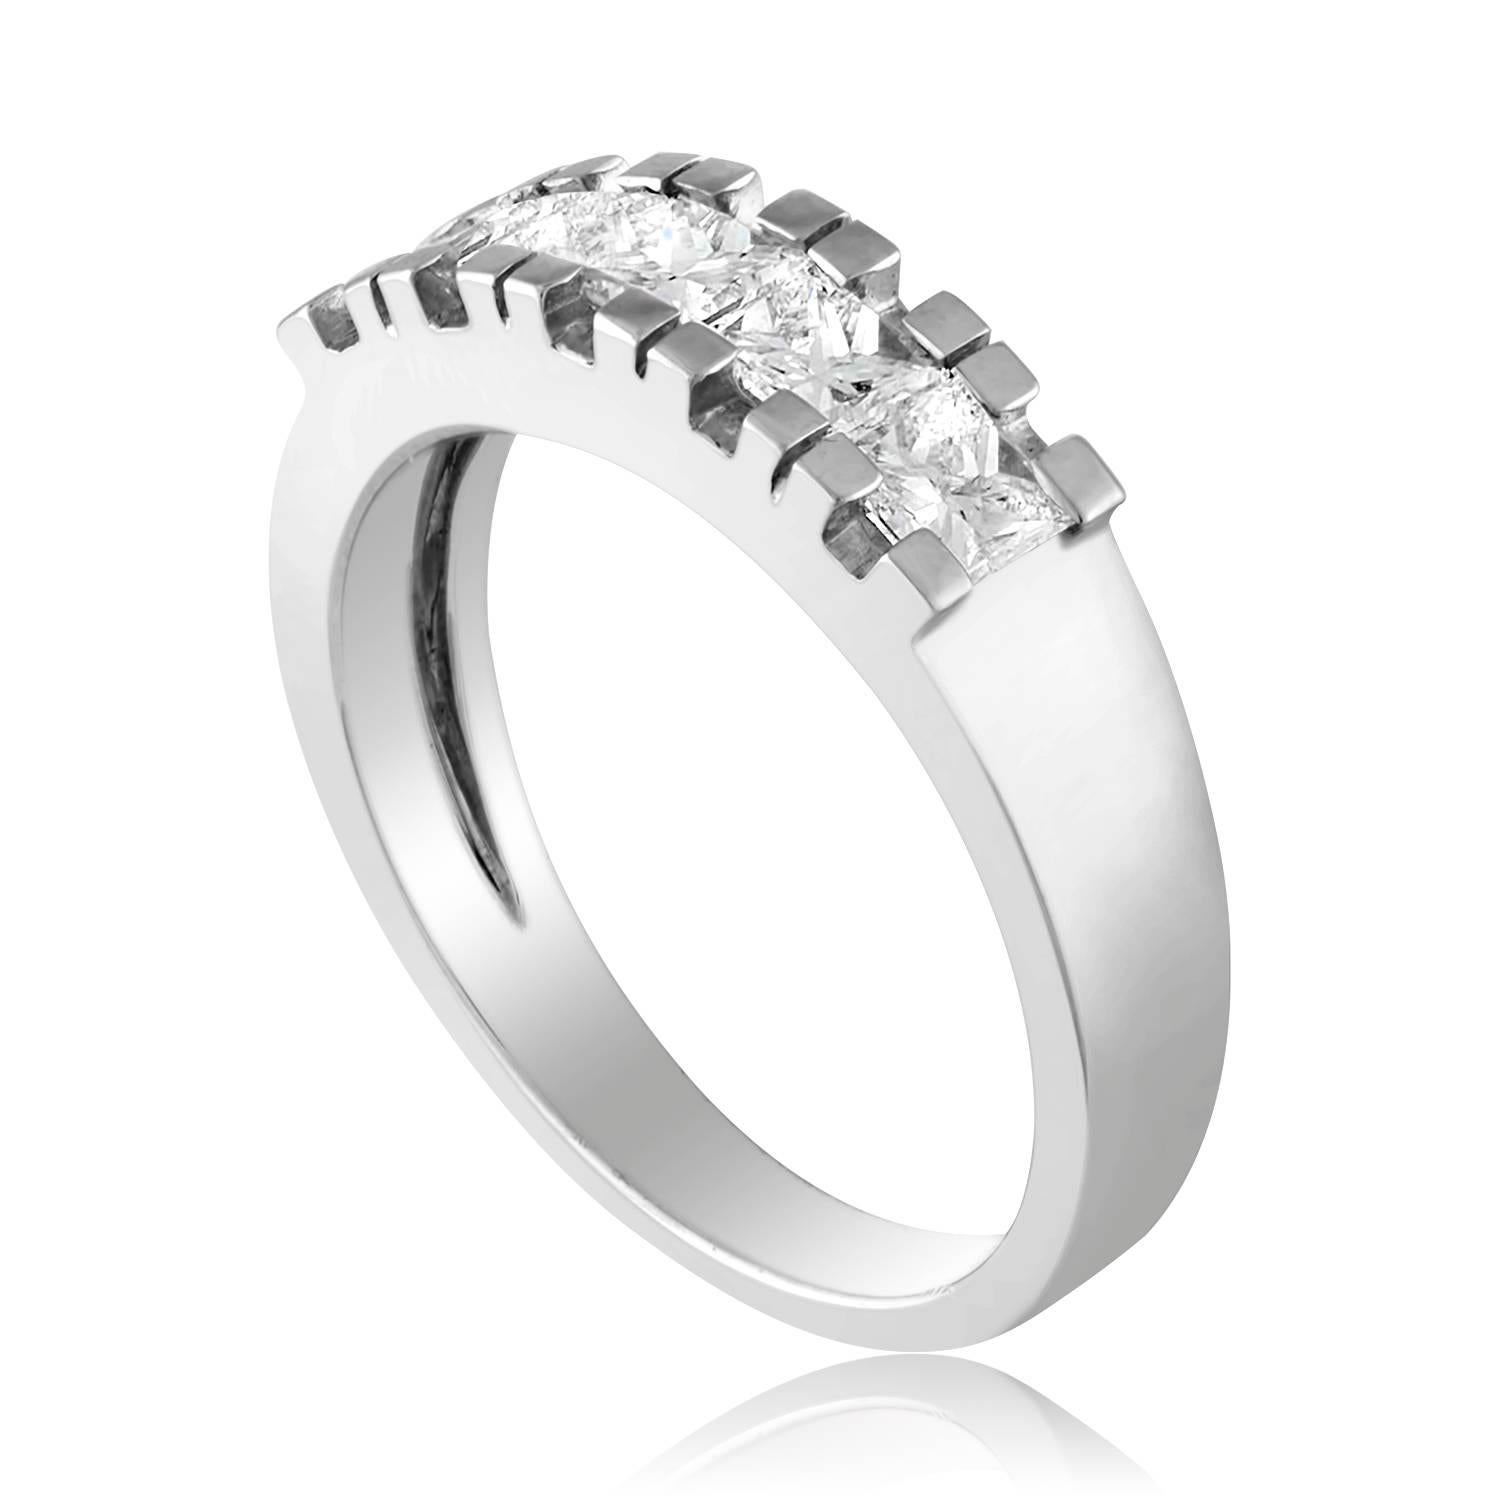 Sehr schöner Halbdiamantbandring
Der Ring ist 18K Weißgold
Es sind 5 Diamanten im Prinzessinnenschliff in Zacken gesetzt
Es gibt 1,05 Karat in Diamanten D/E VVS
Der Ring ist eine Größe 6,75, sizable. 
Der Ring wiegt 4,9 Gramm.
Der Ring ist 5,31 mm